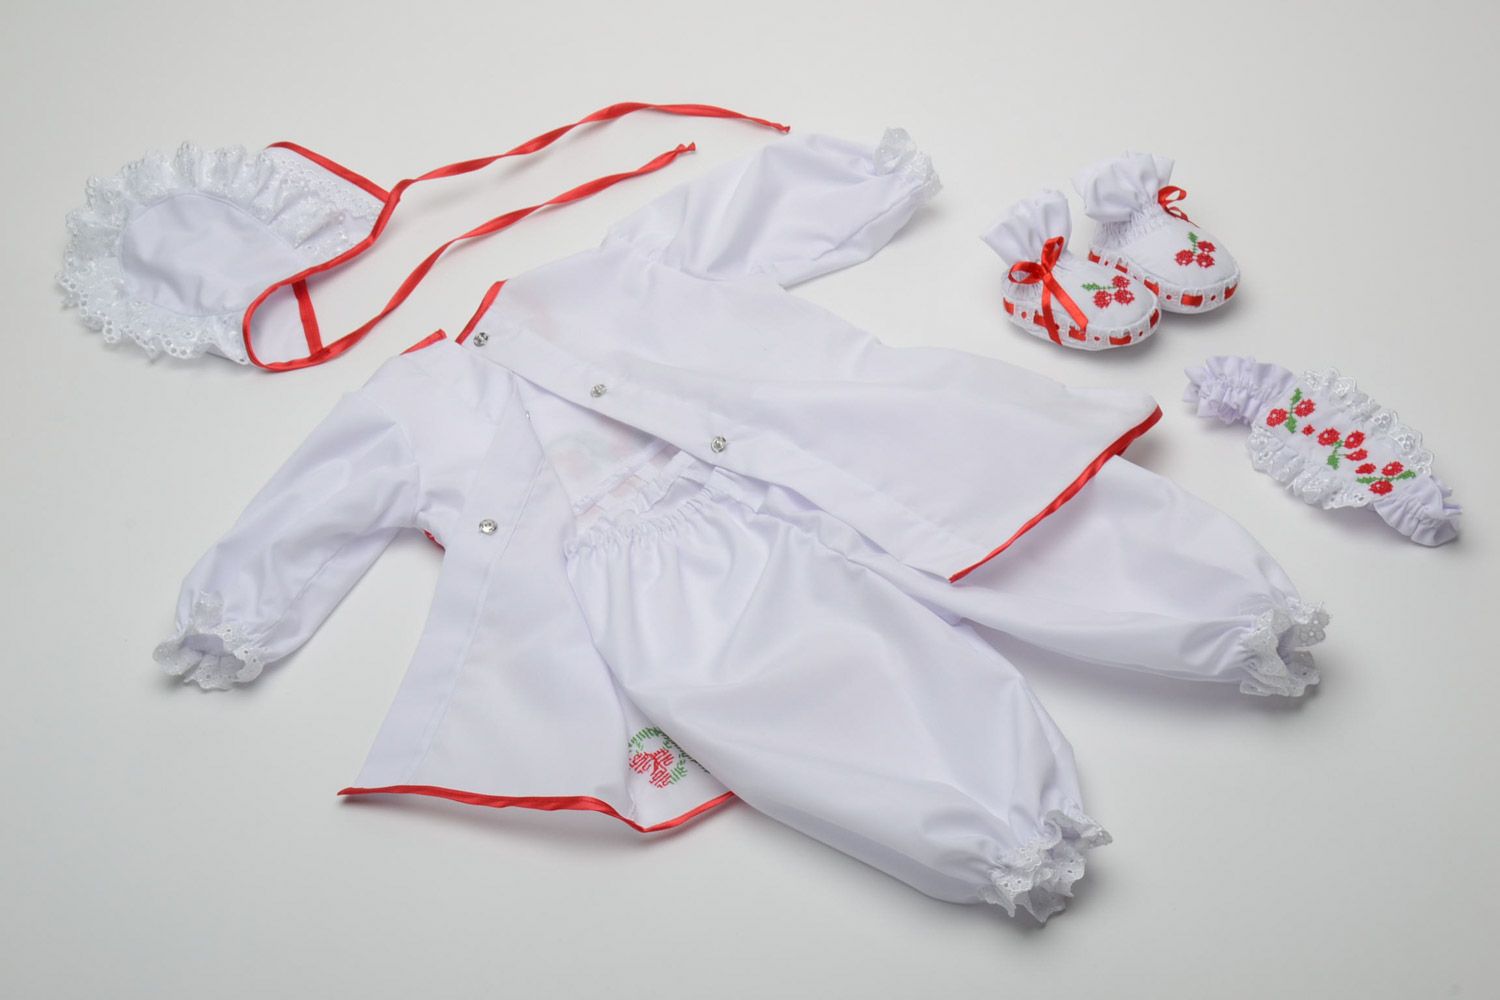 Handmade Baby Kleidung Set für Mädchen Babyschuhe Kleid Hose Haube und Haarband  foto 2